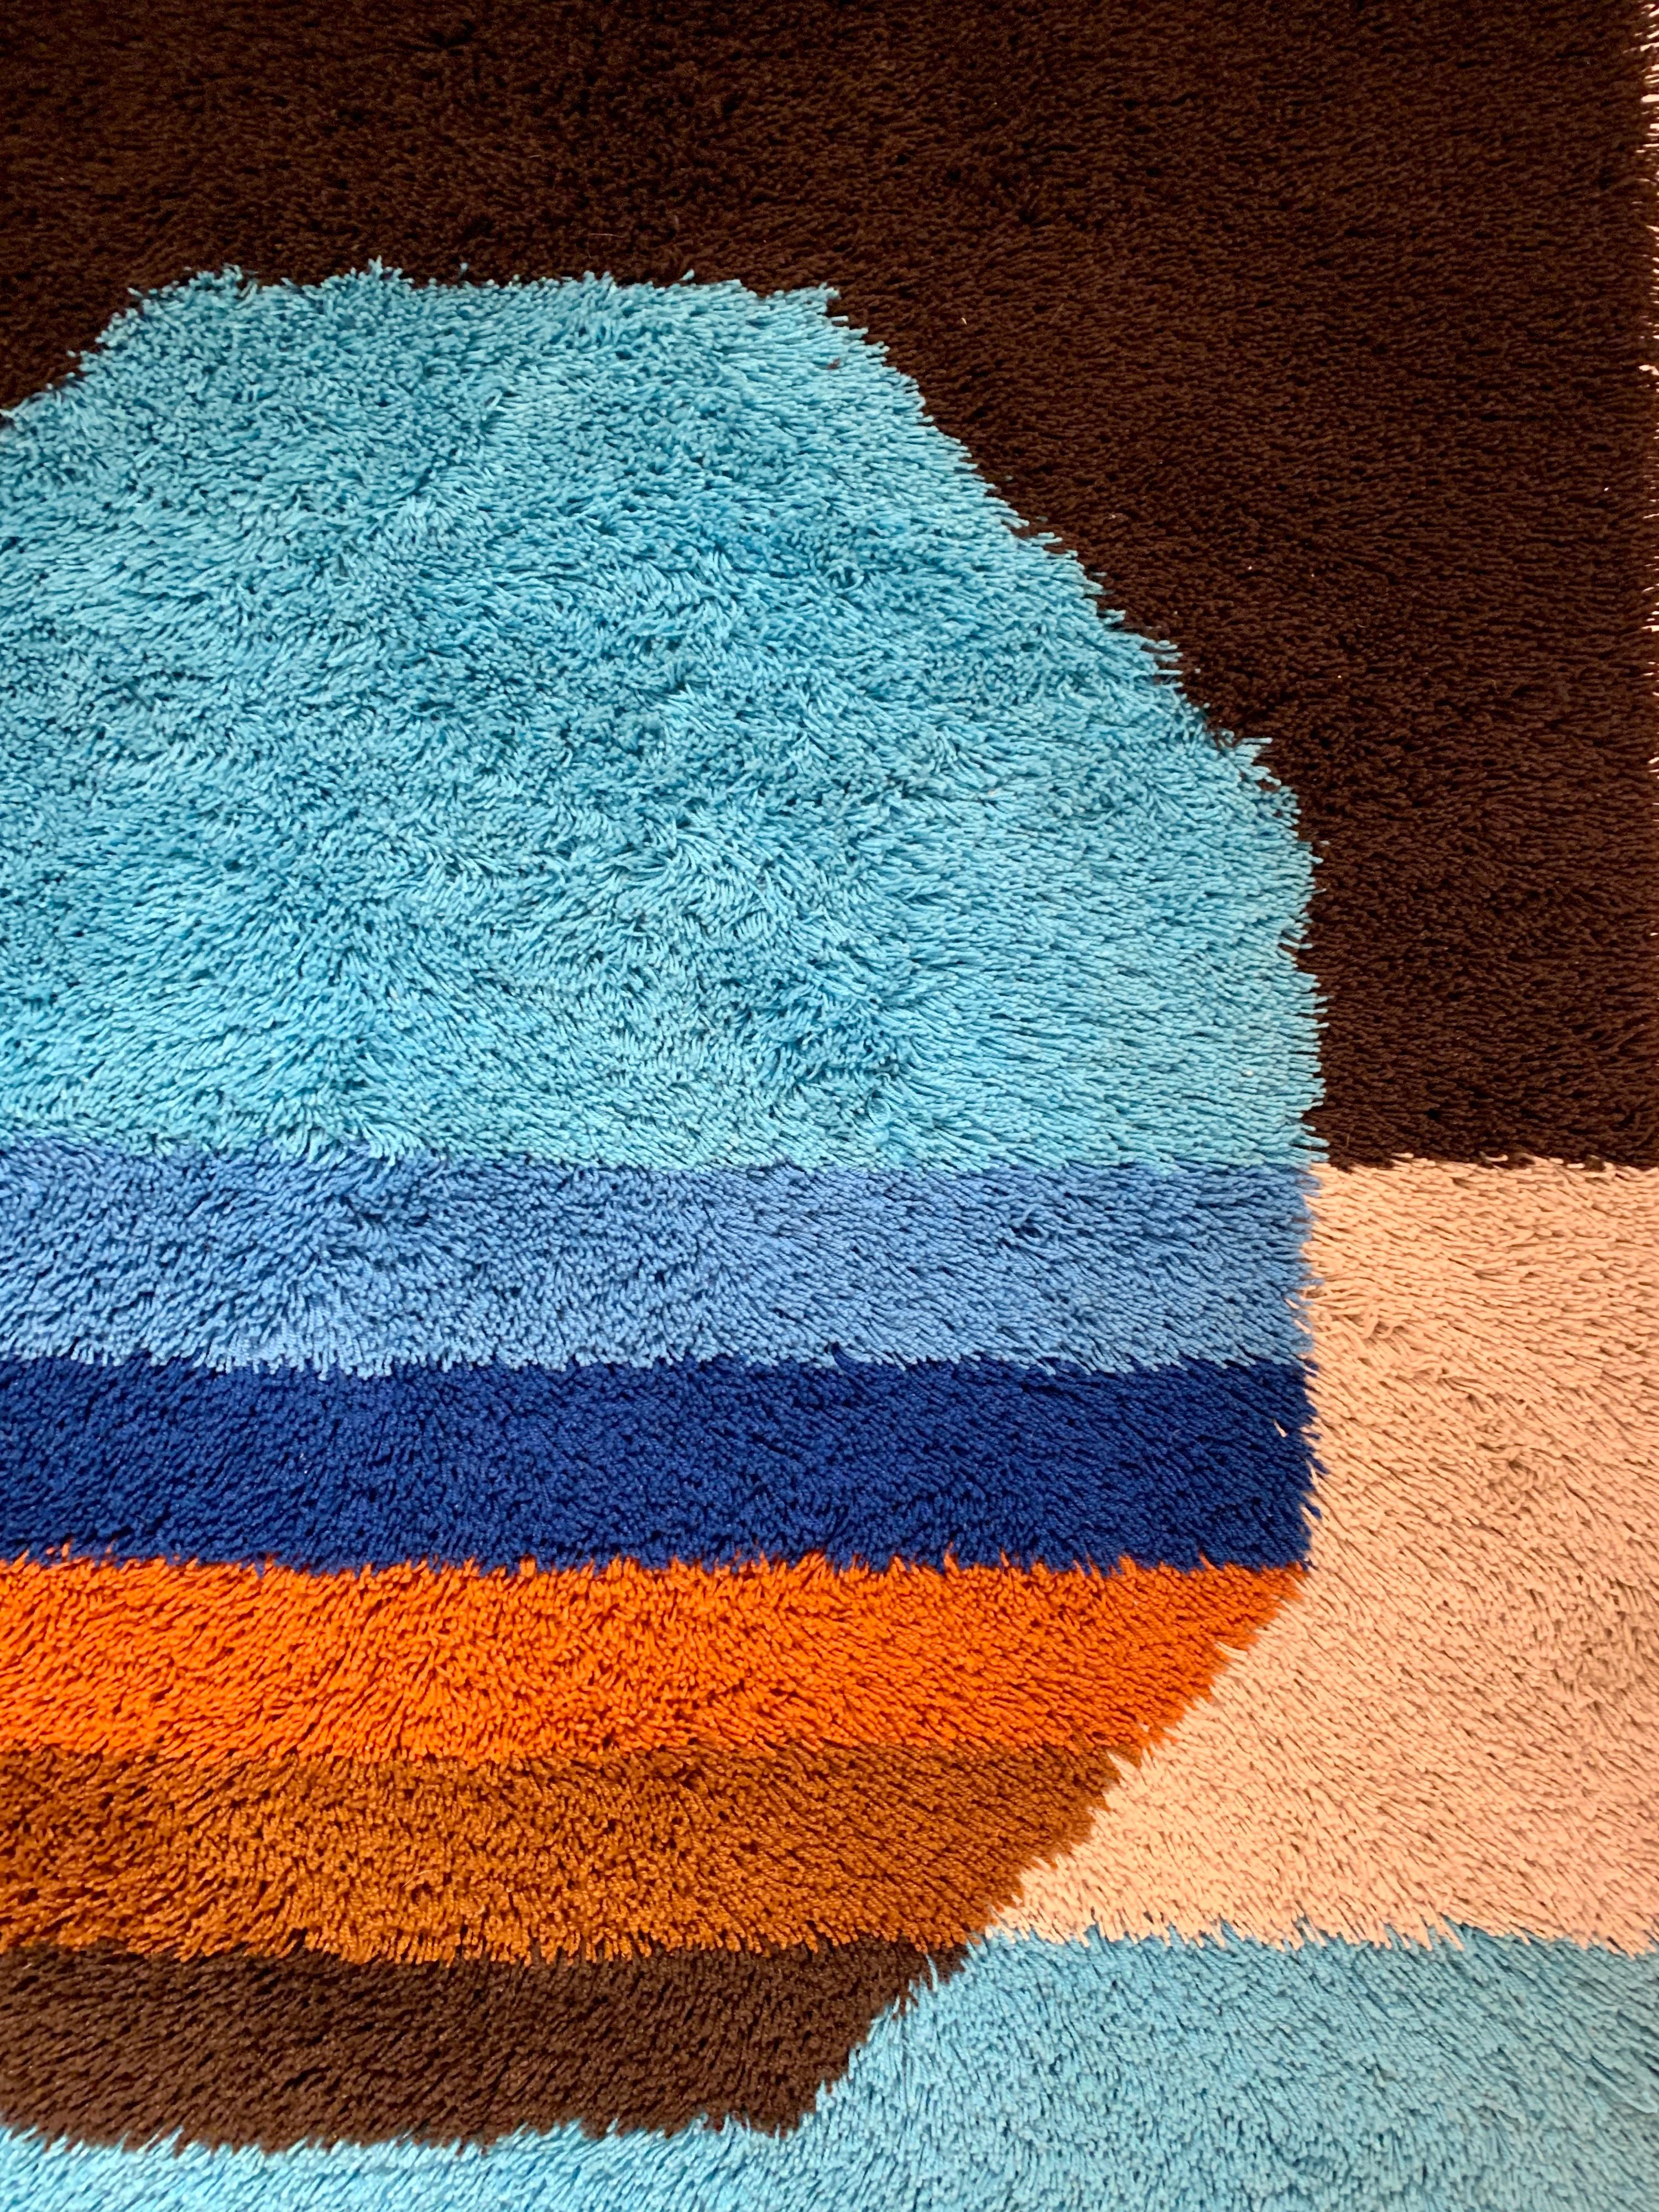 Desso ist ein niederländisches Teppichunternehmen, das in den 1970er Jahren dekorative Teppiche herstellte. Dieses besondere Modell ist zeitgemäß im Pop-Stil von Verner Panton mit seinen leuchtenden, satten Farben.